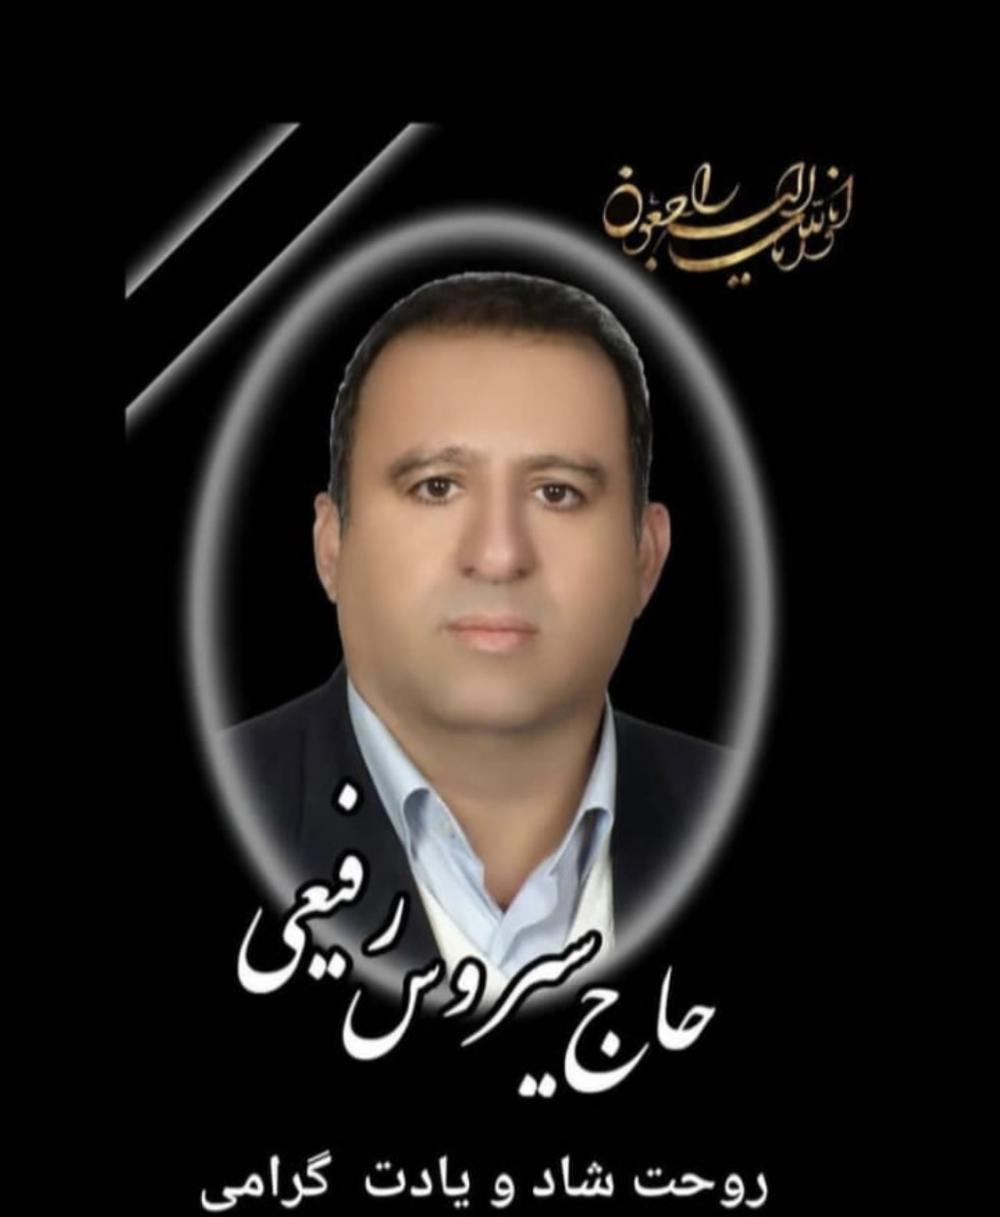 یادبود شادروان حاج سیروس رفیعی